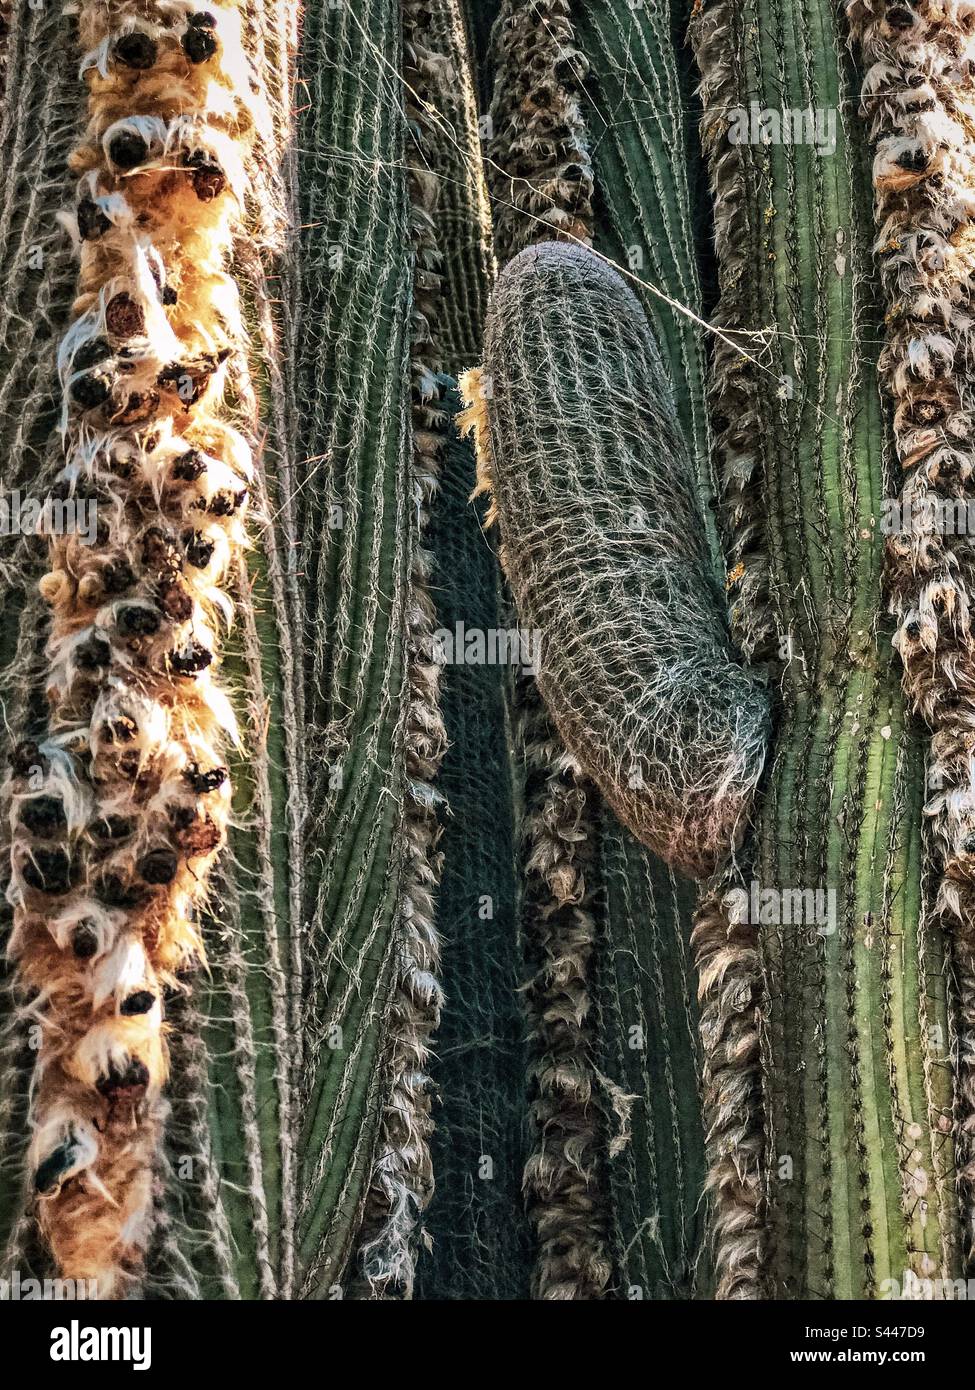 Gros plan plein cadre de tiges de cactus laineux à têtes laineux, poils roux doux sur les côtés des tiges, protégeant les fleurs et les graines. Ligne, motif, texture. Arrière-plans. Banque D'Images